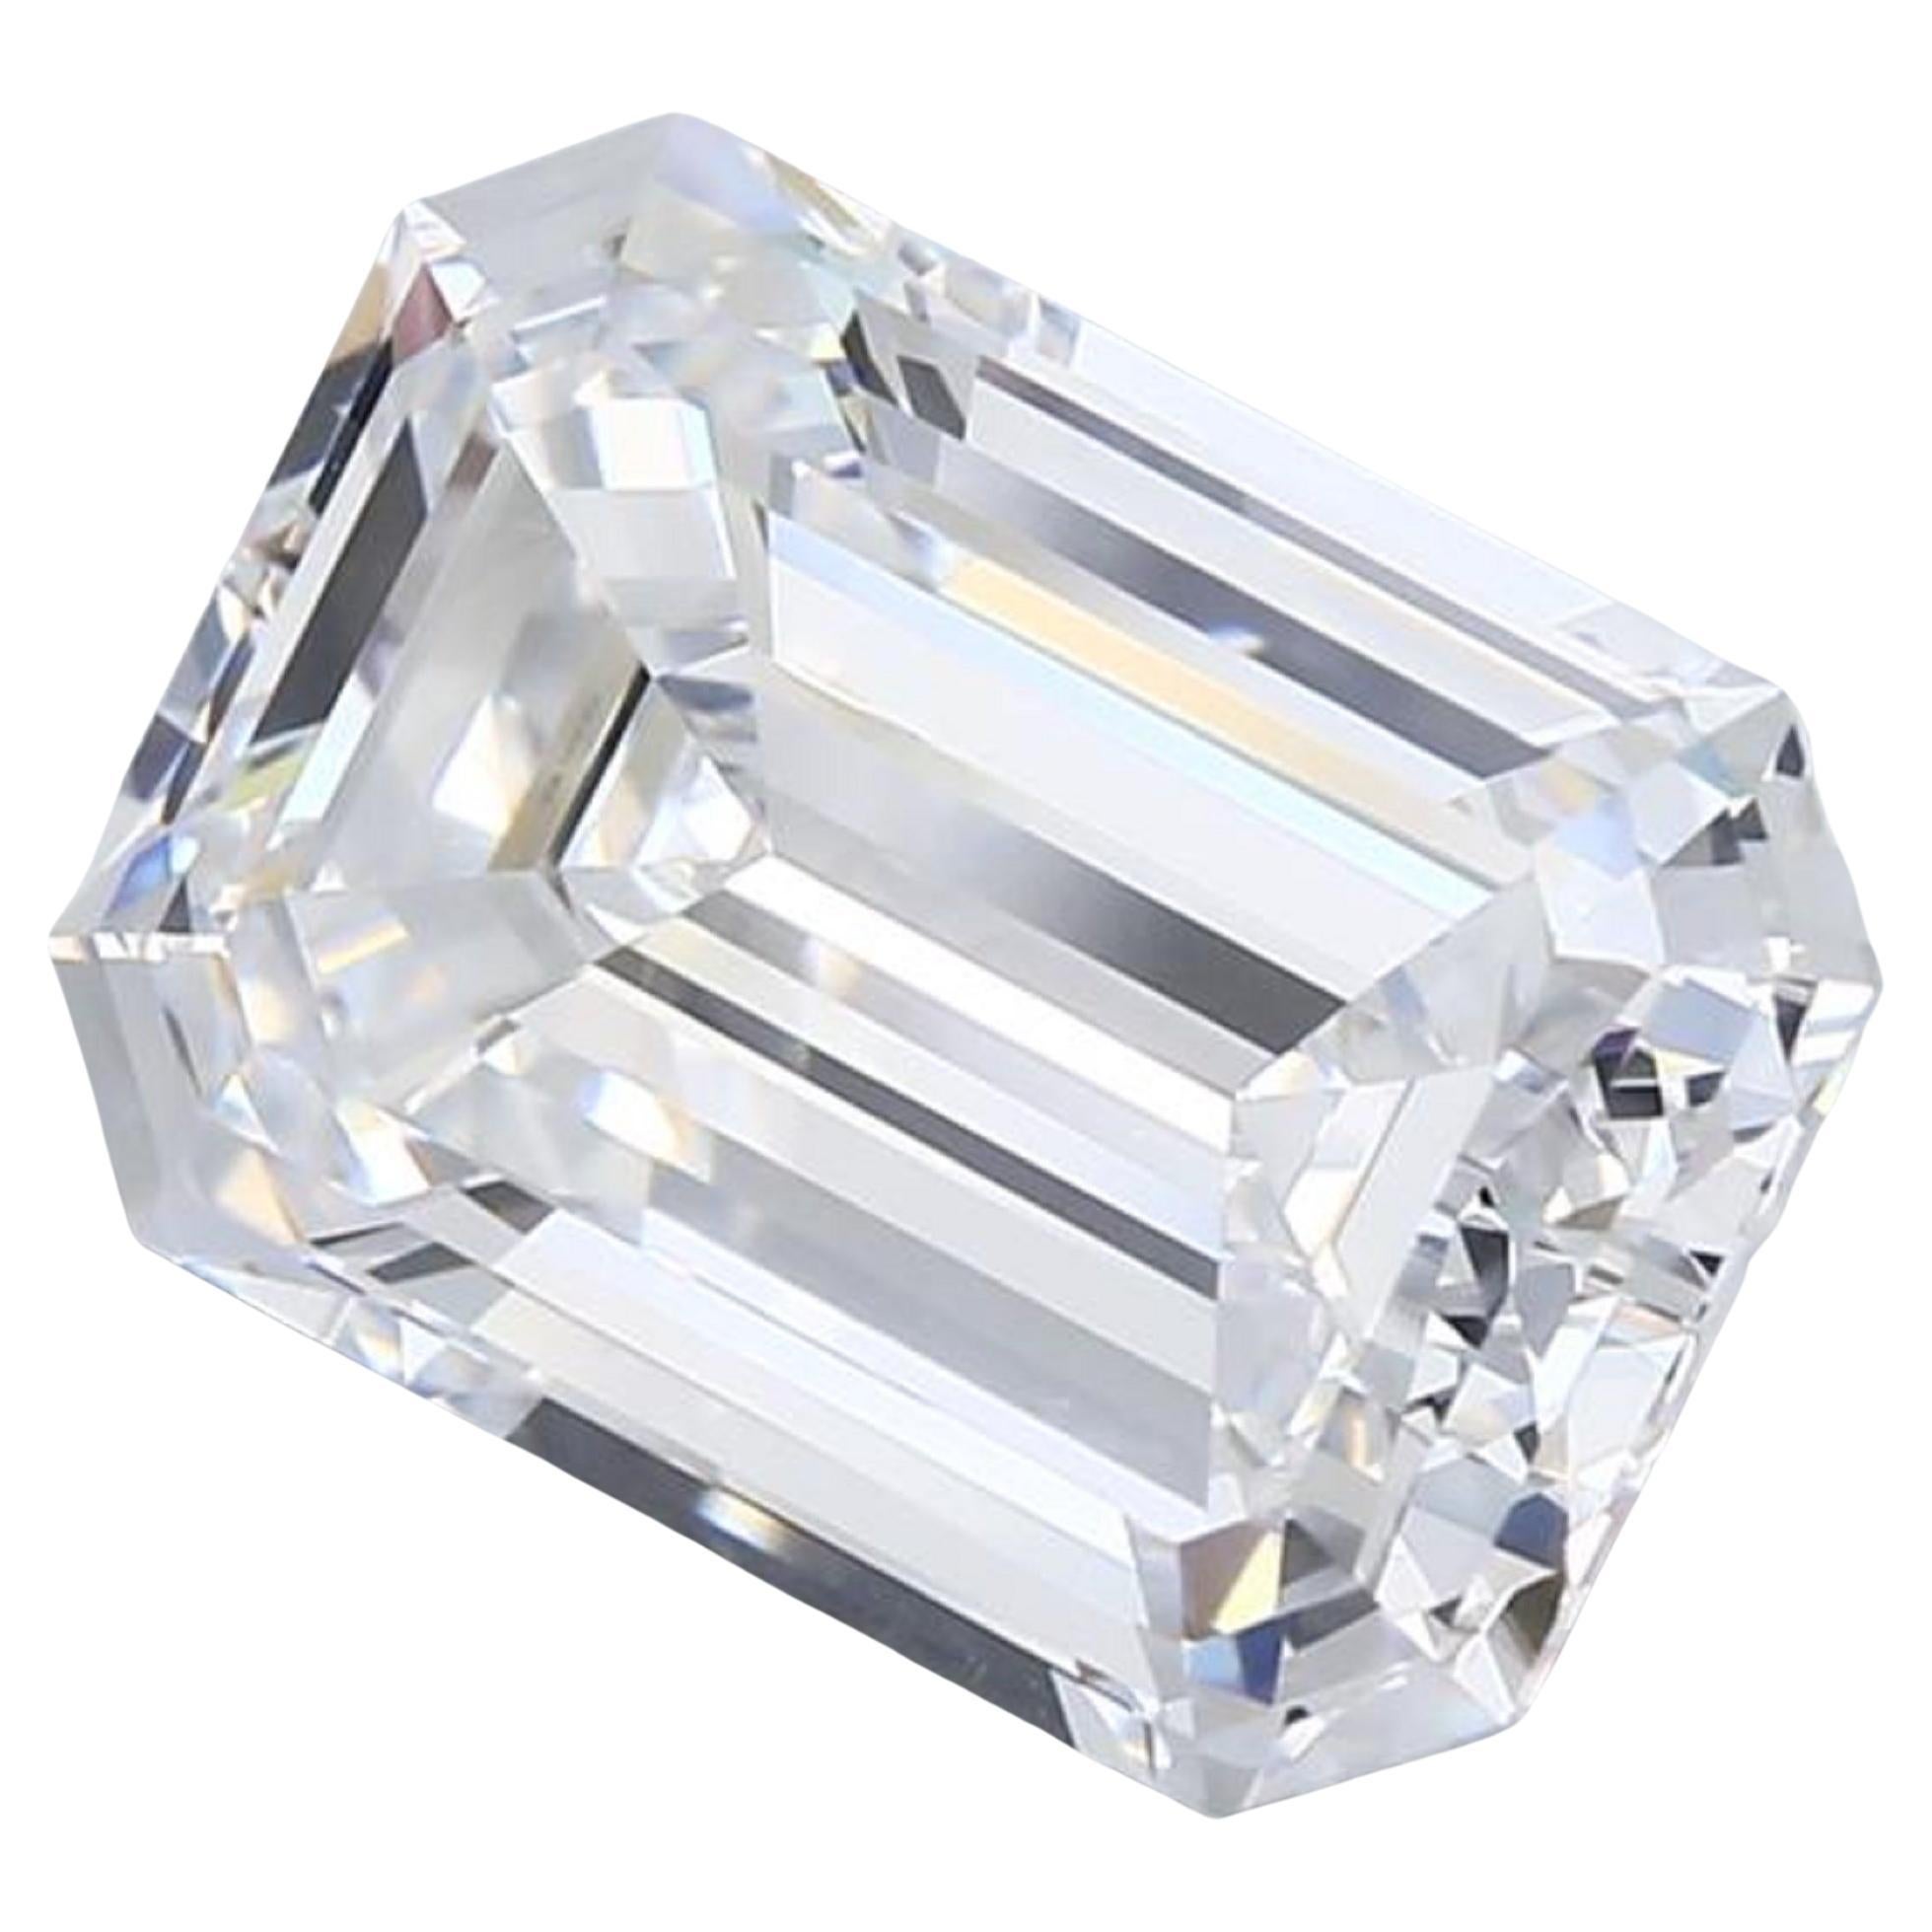 Un diamant taille émeraude de qualité investissement certifié par le GIA
5.83 Carat
D Couleur 
Une clarté sans faille au niveau interne
Aucune Fluorescence 
Excellent polissage 
Excellente symétrie